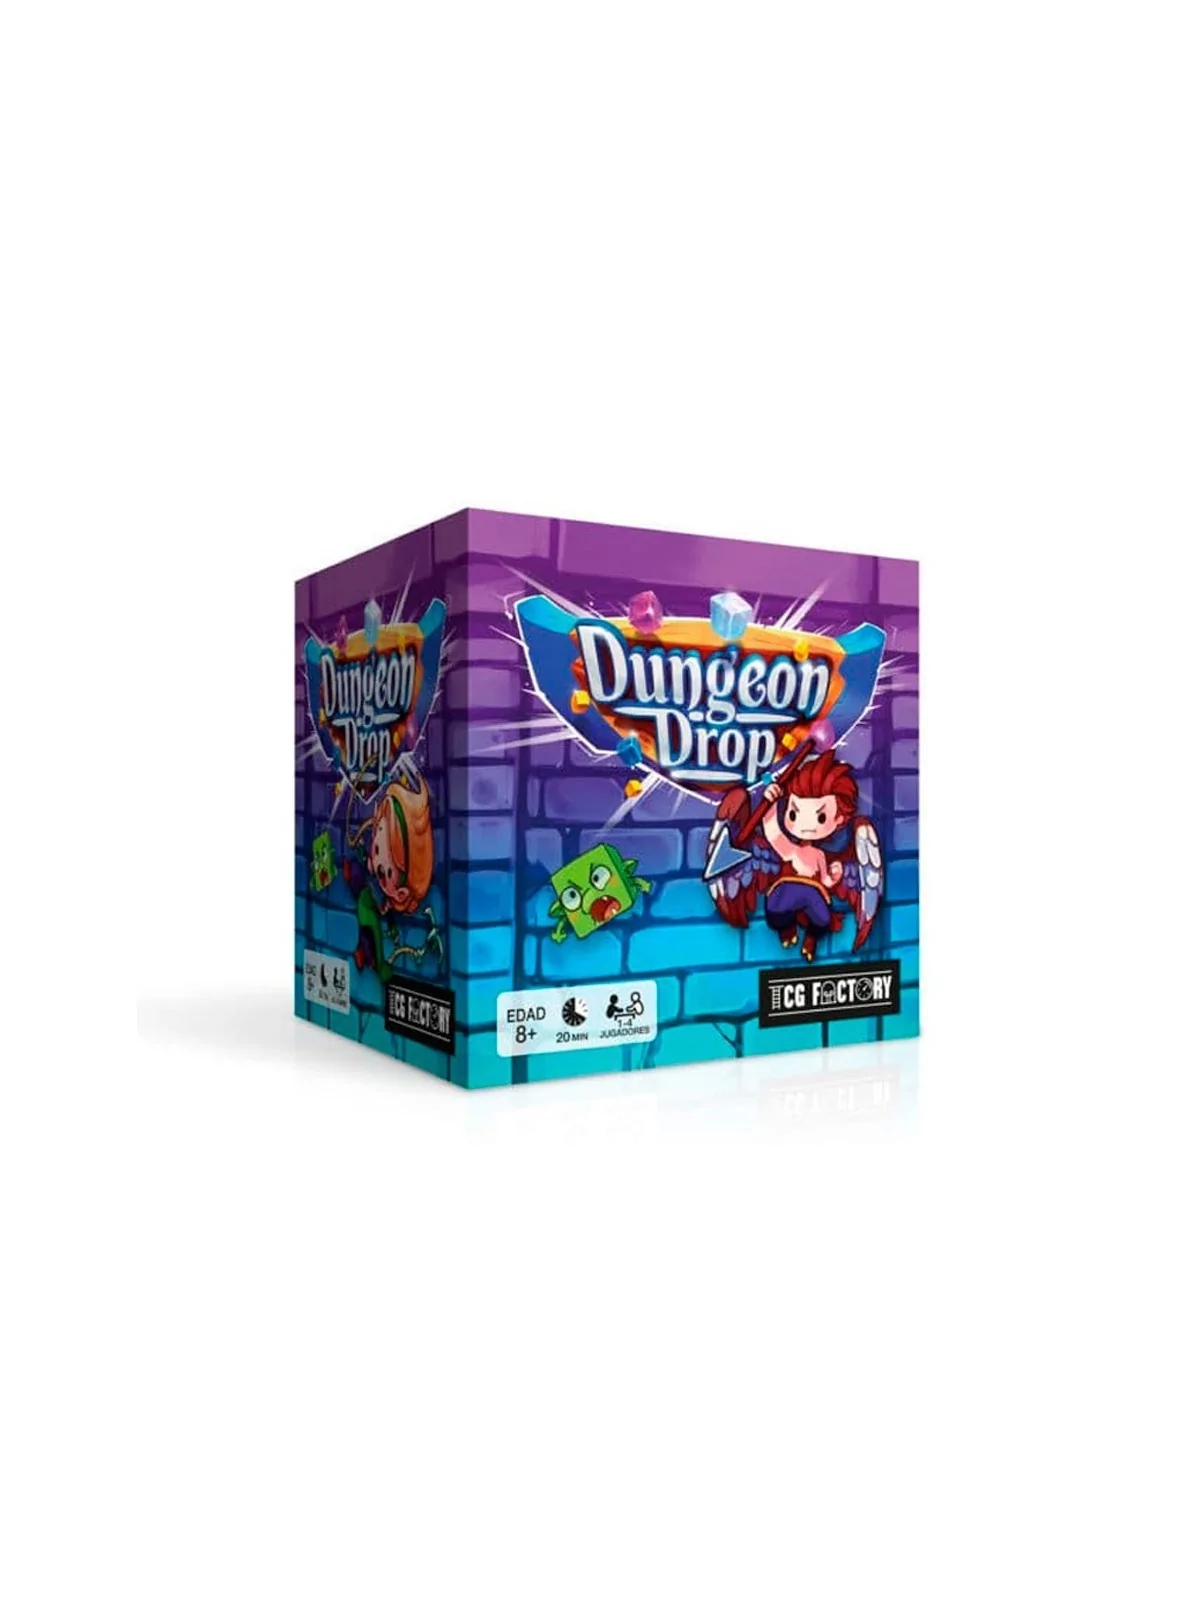 Comprar Dungeon Drop barato al mejor precio 17,96 € de TCG Factory